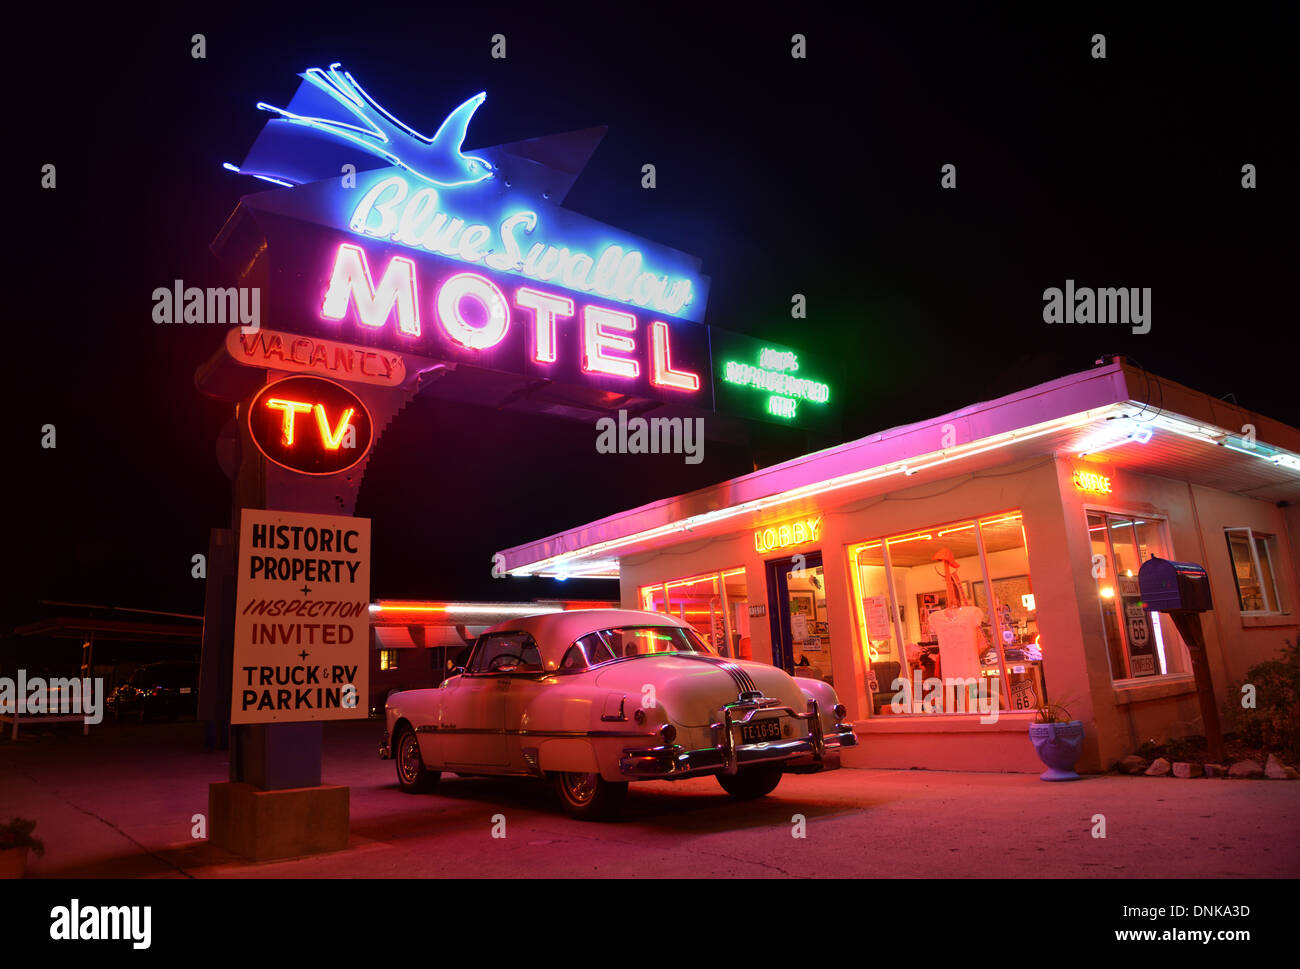 L'historique Route 66 Motel Hirondelle, Tucumcari avec de vieux néons et une Pontiac 50s Banque D'Images